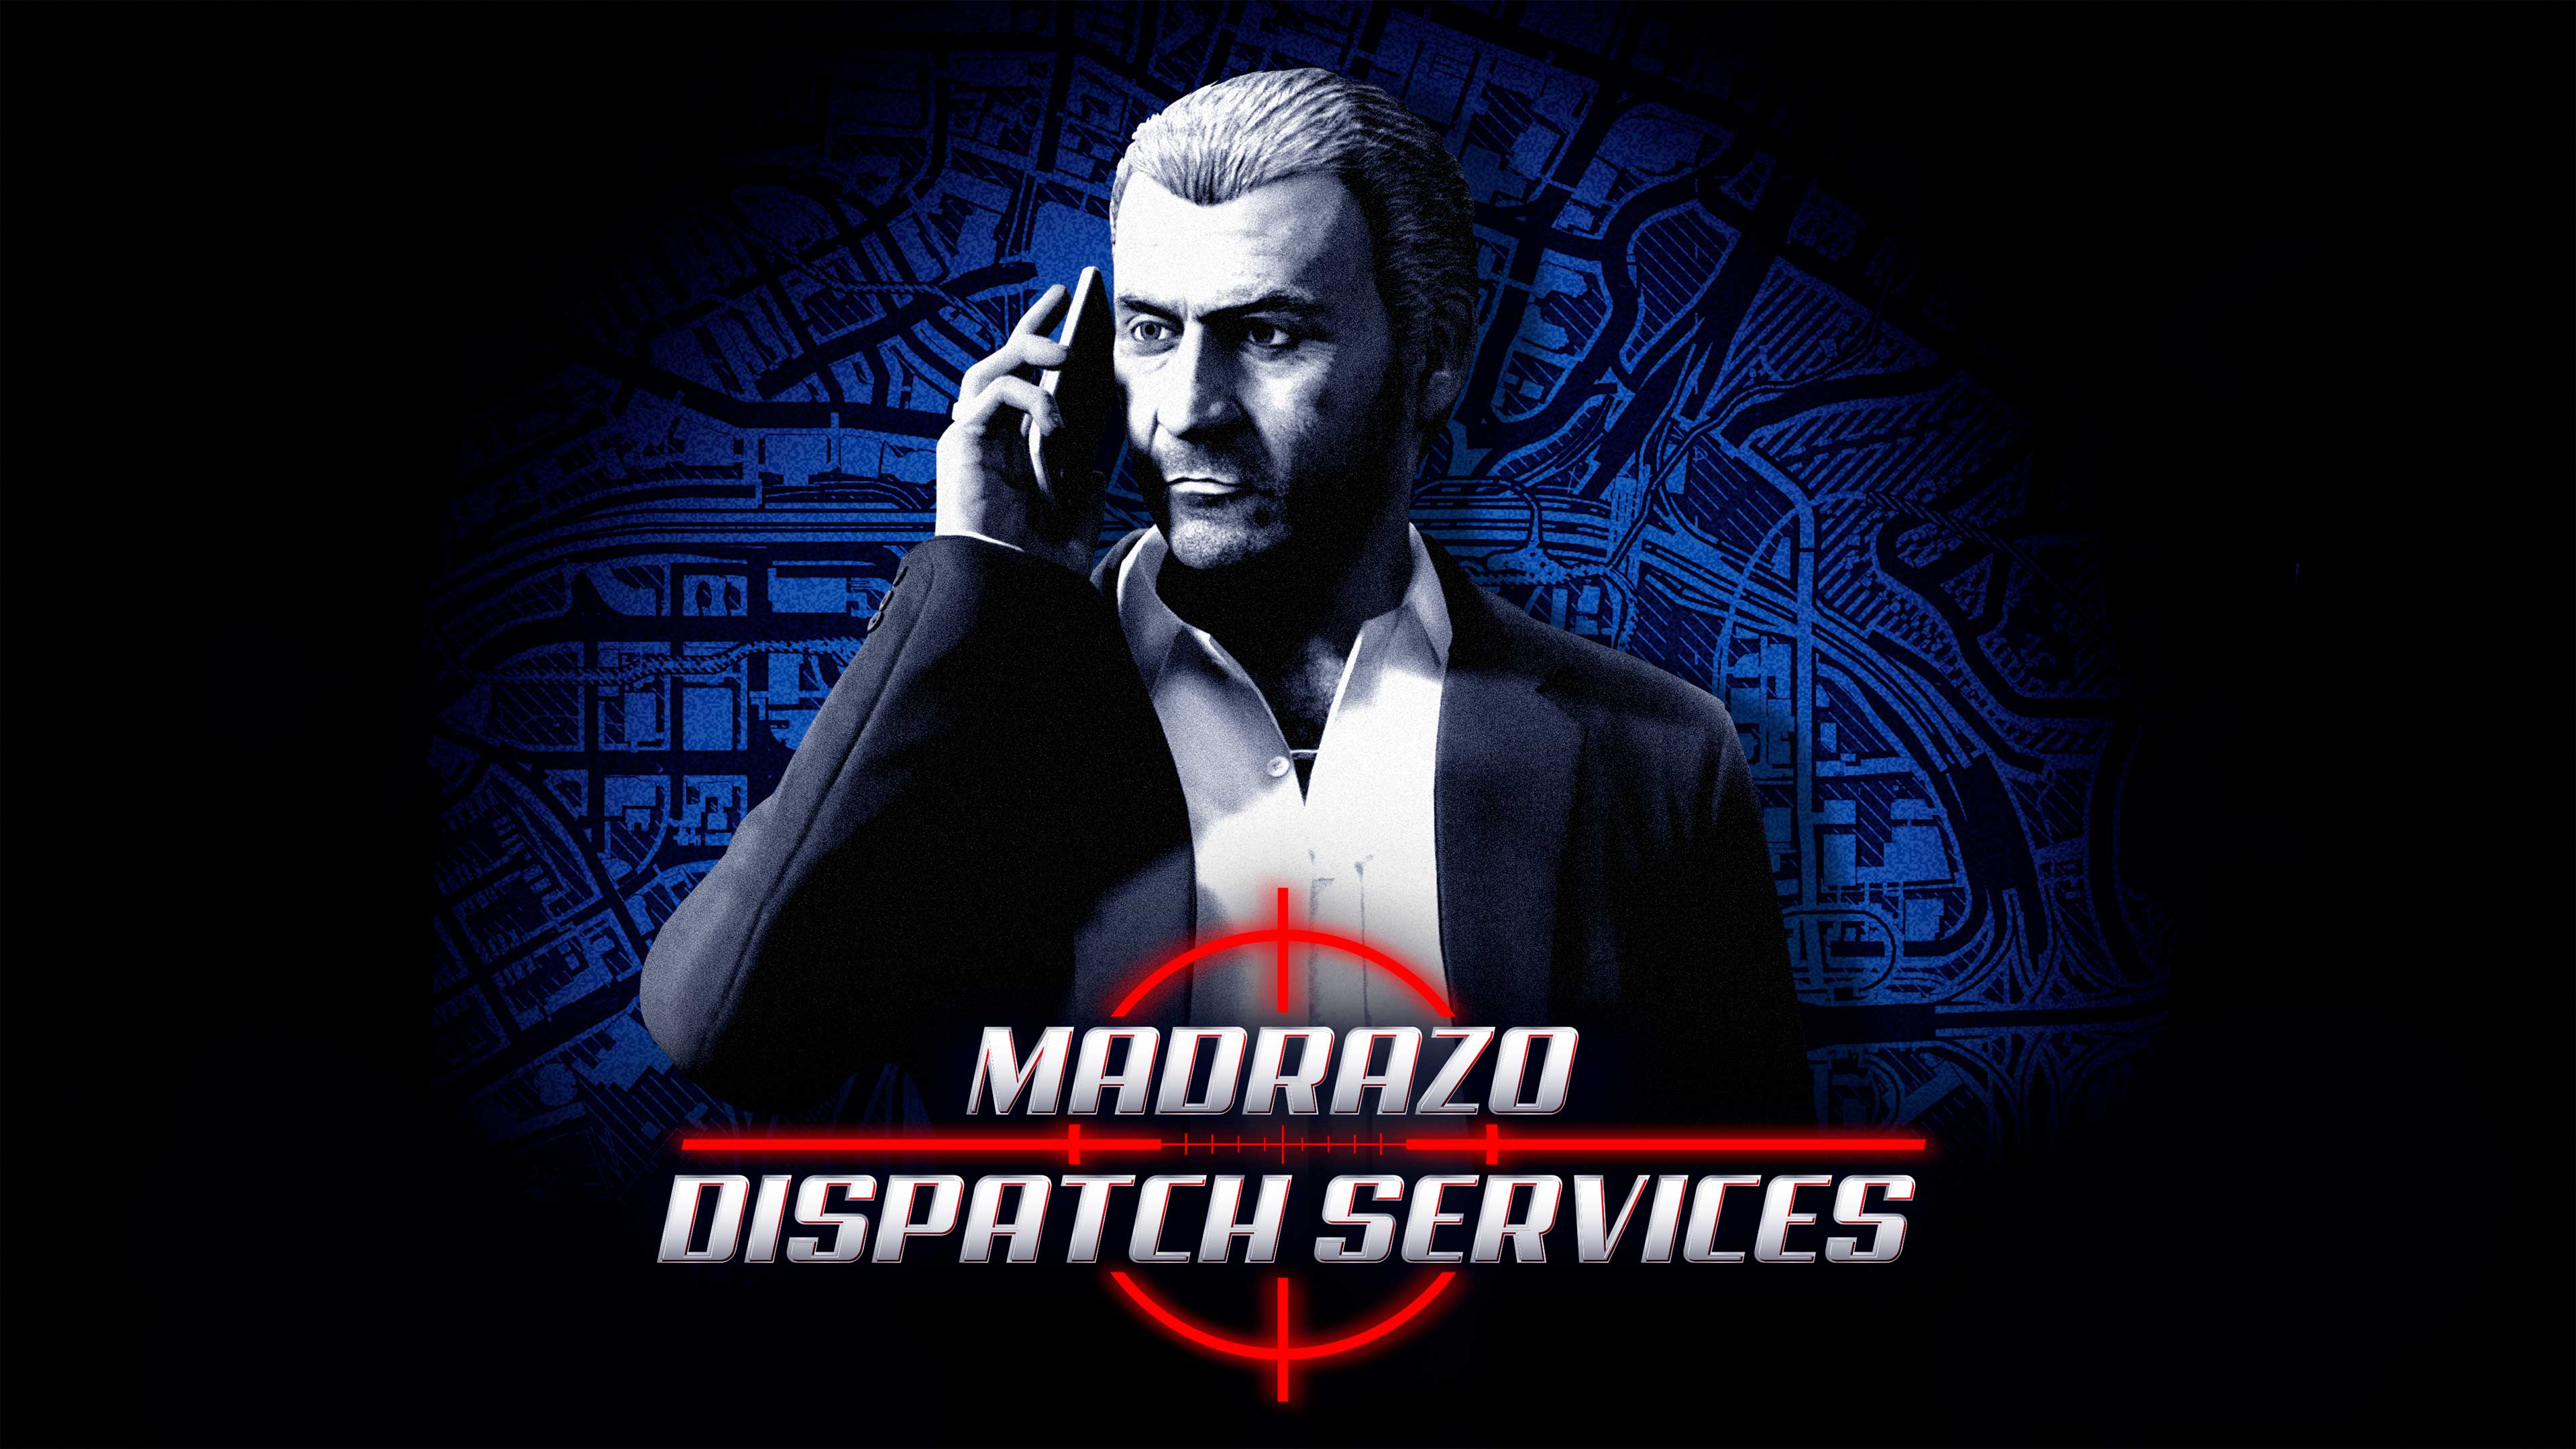 GTA Online Madrazo Missions